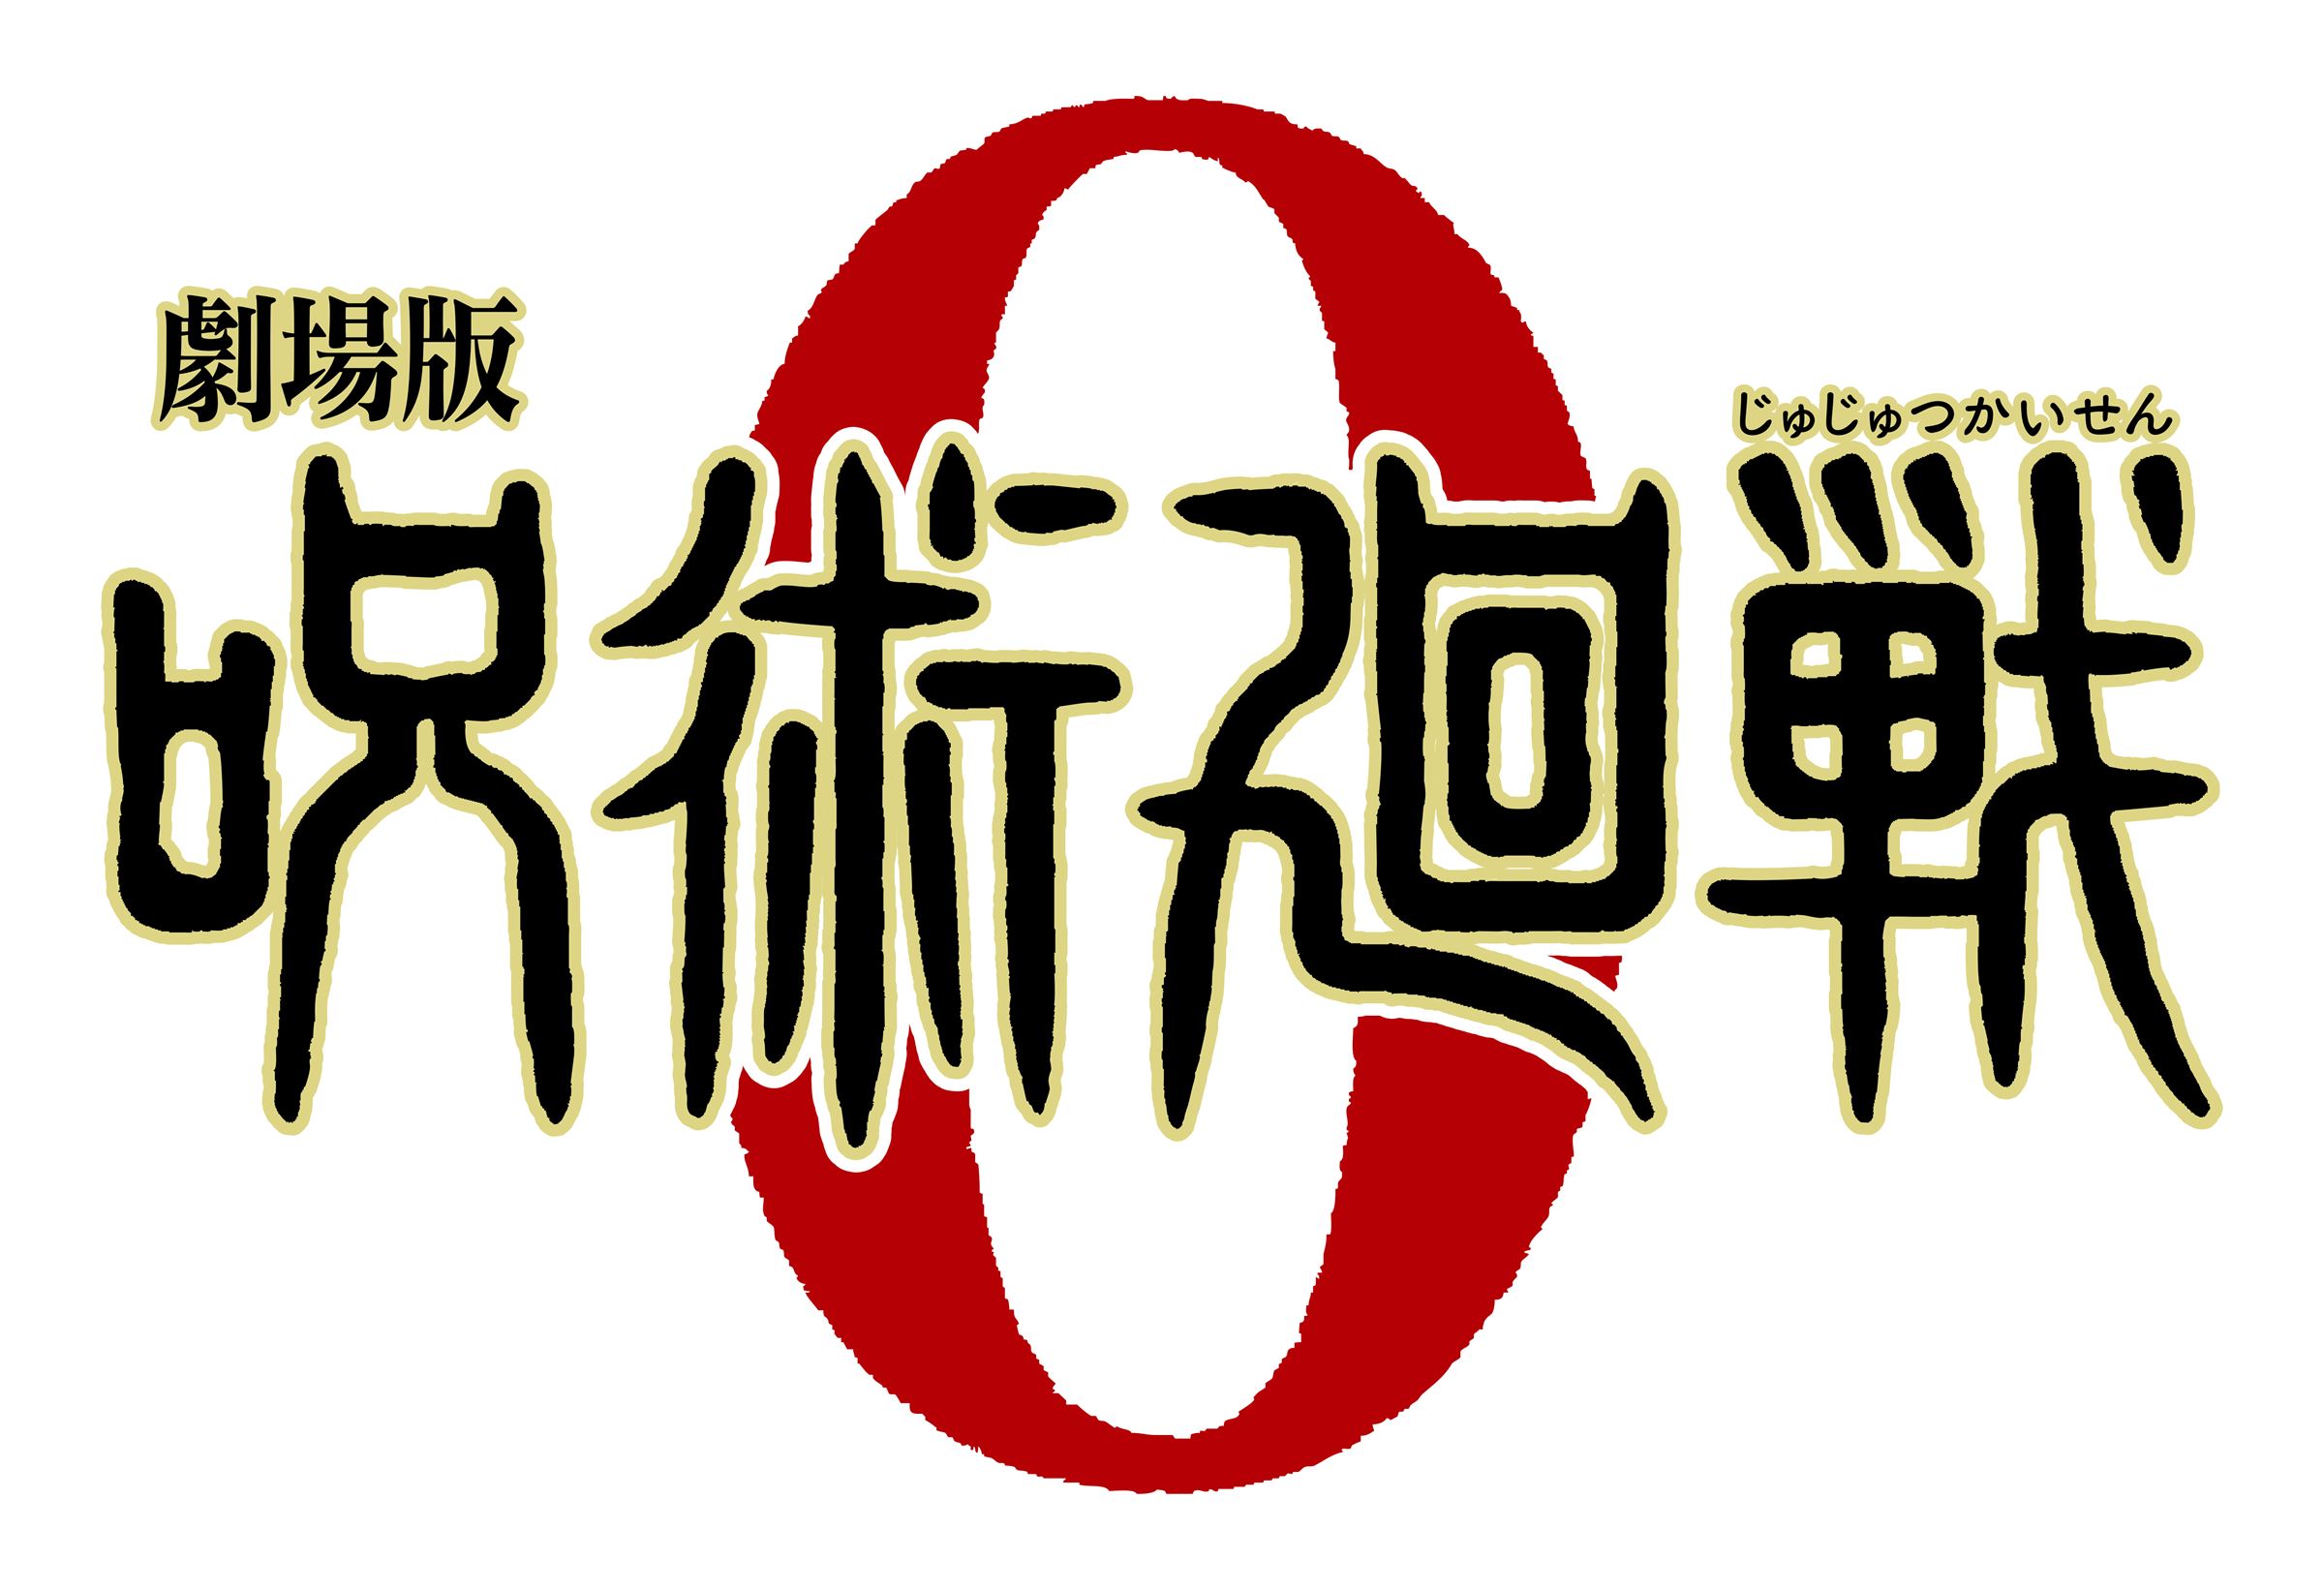 『劇場版 呪術廻戦 0』ロゴ (C) 2021「劇場版 呪術廻戦 0」製作委員会 (C)芥見下々／集英社